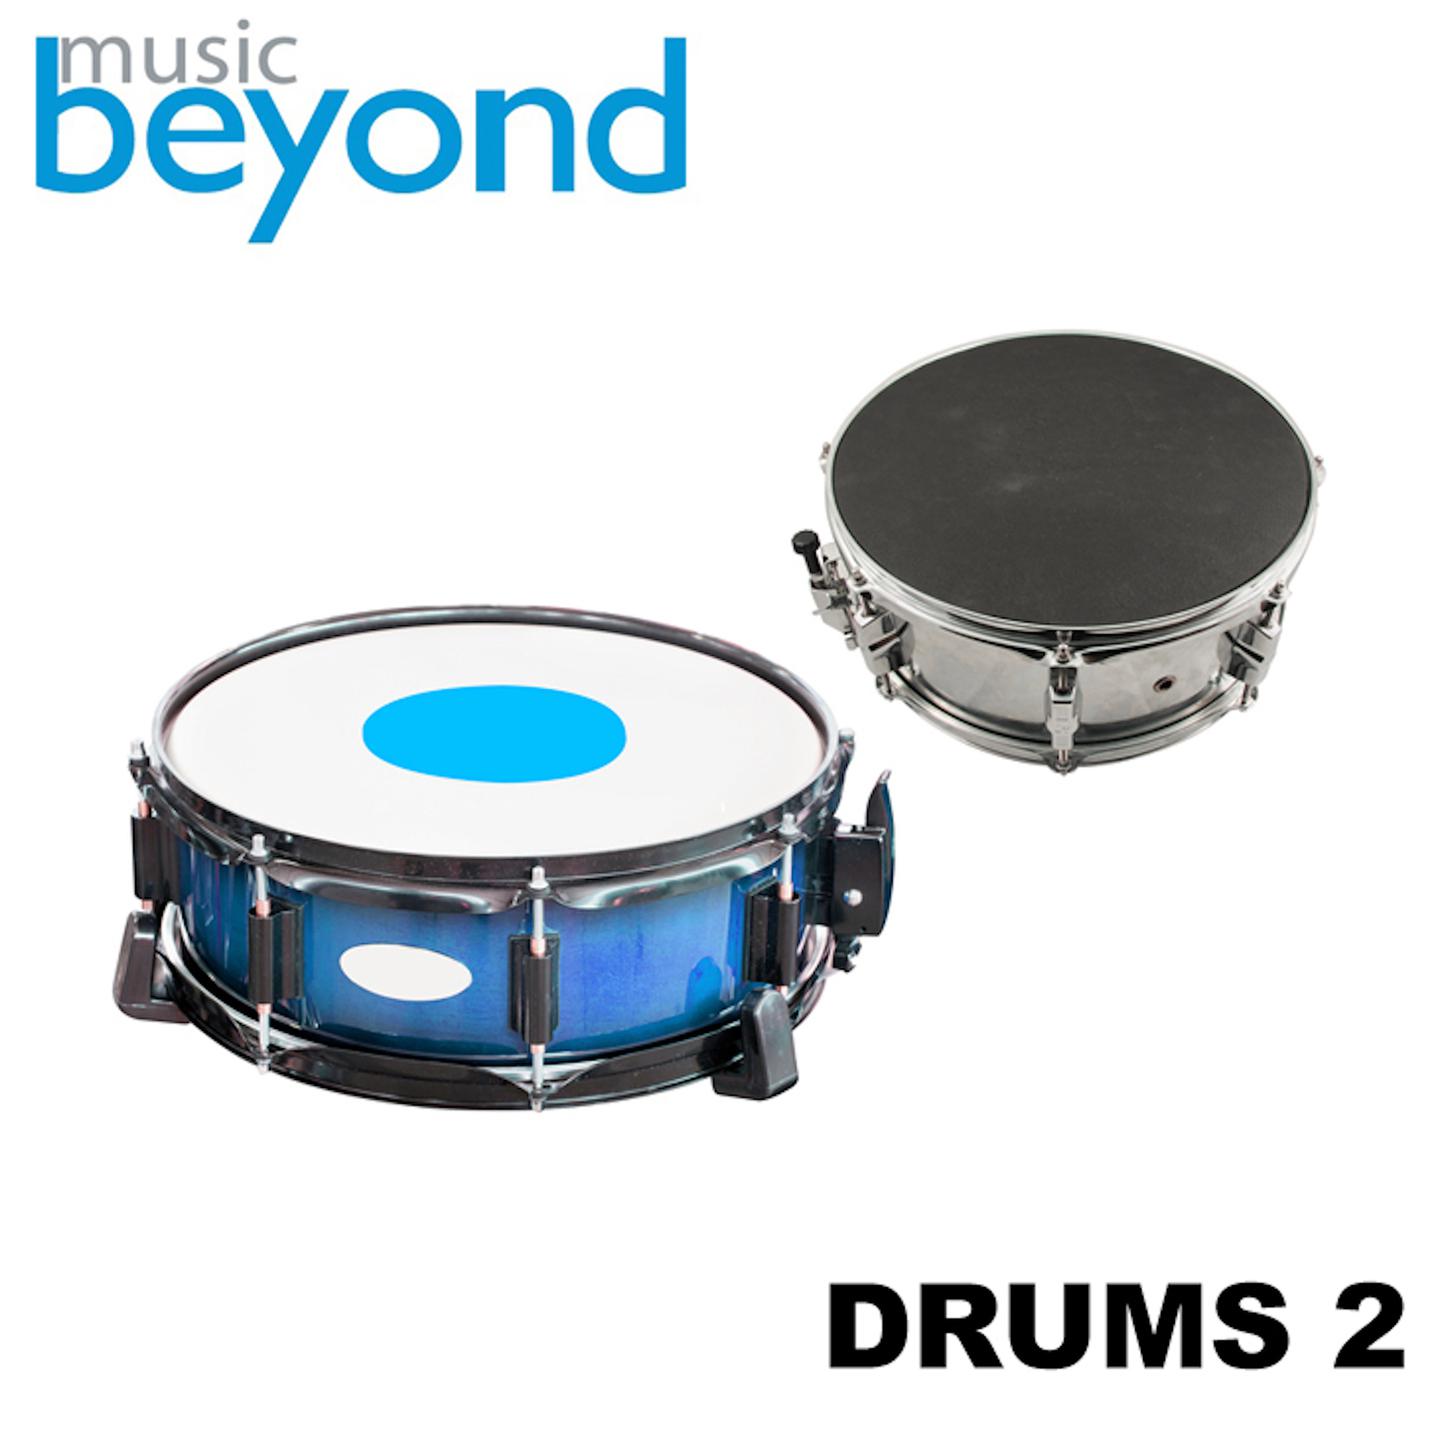 Drums, Vol. 2